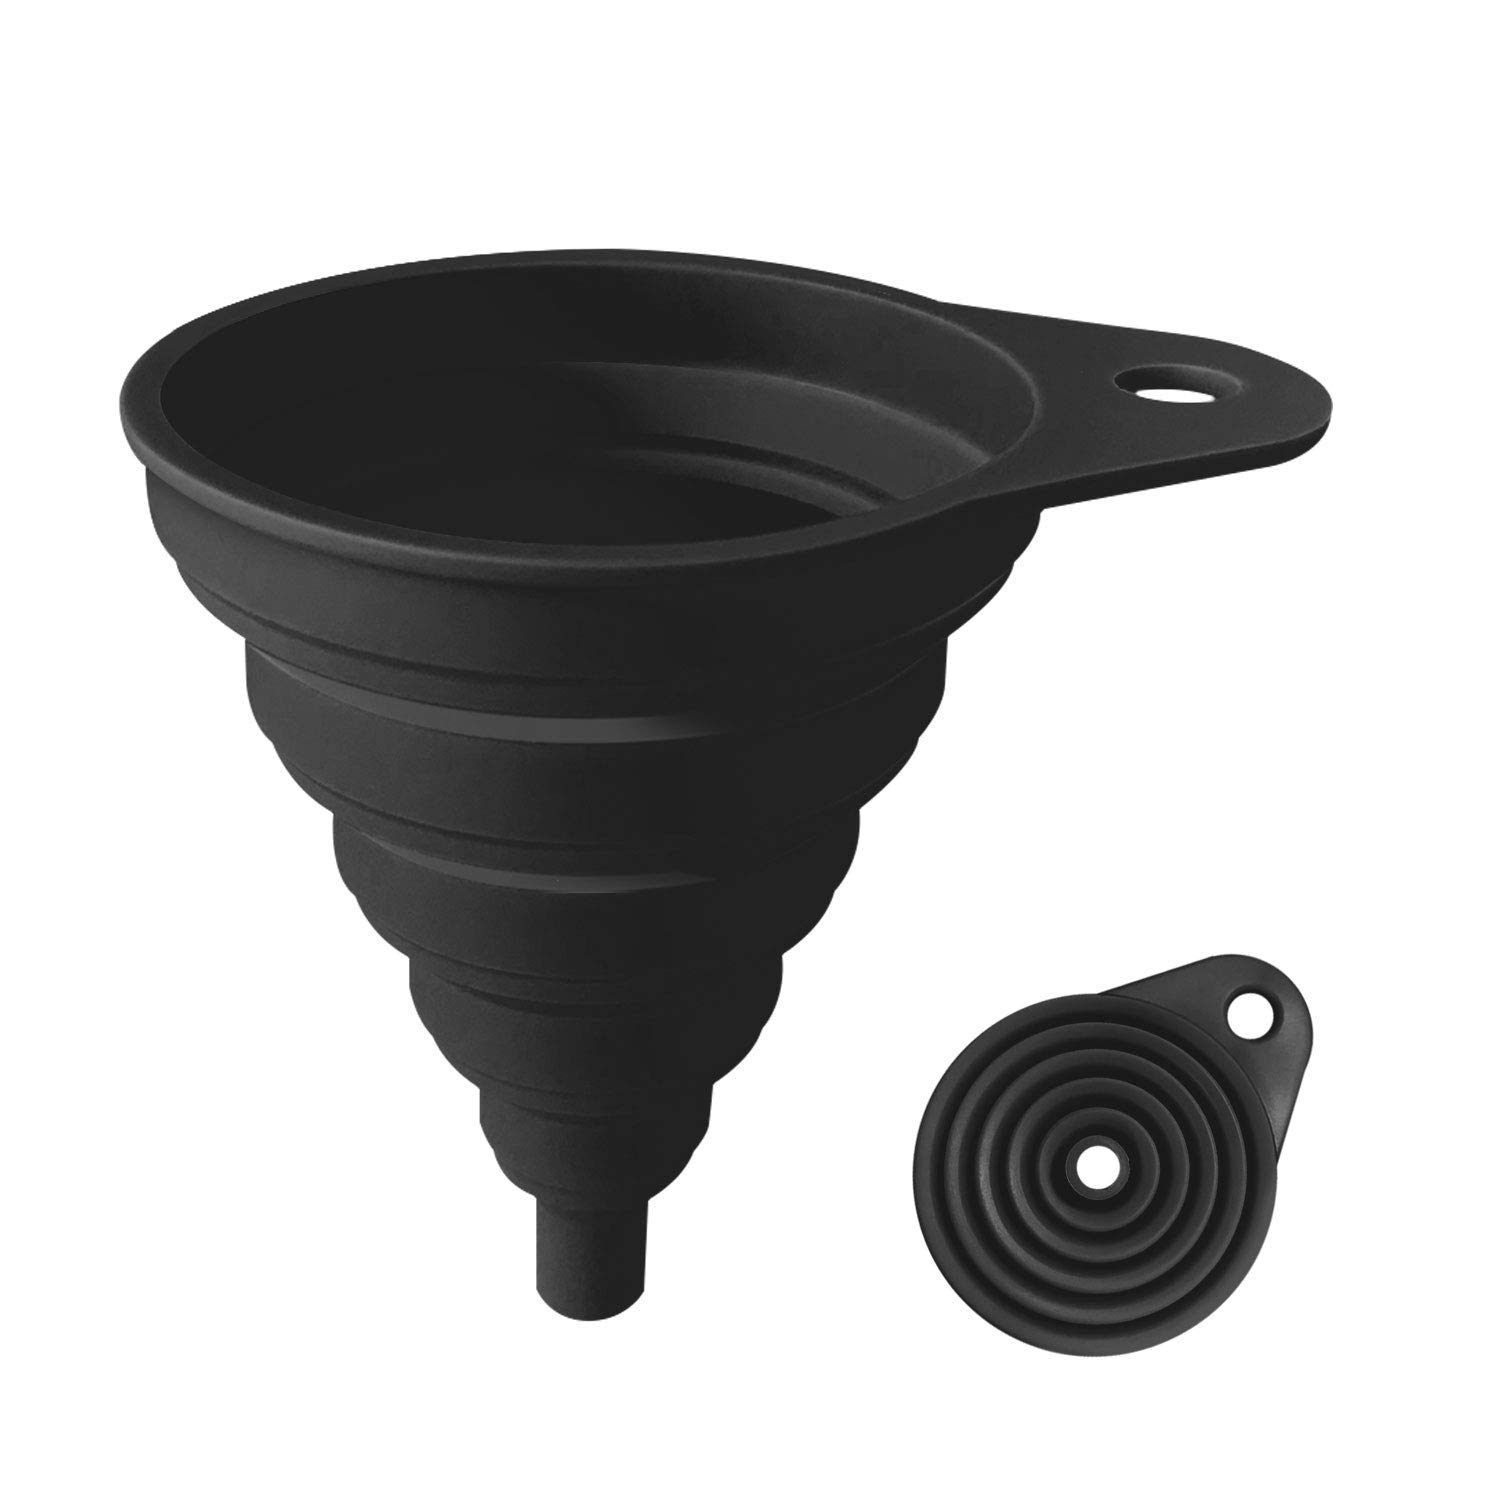 ANNIOCA Heat-Resistant Flexible Silicone Funnel